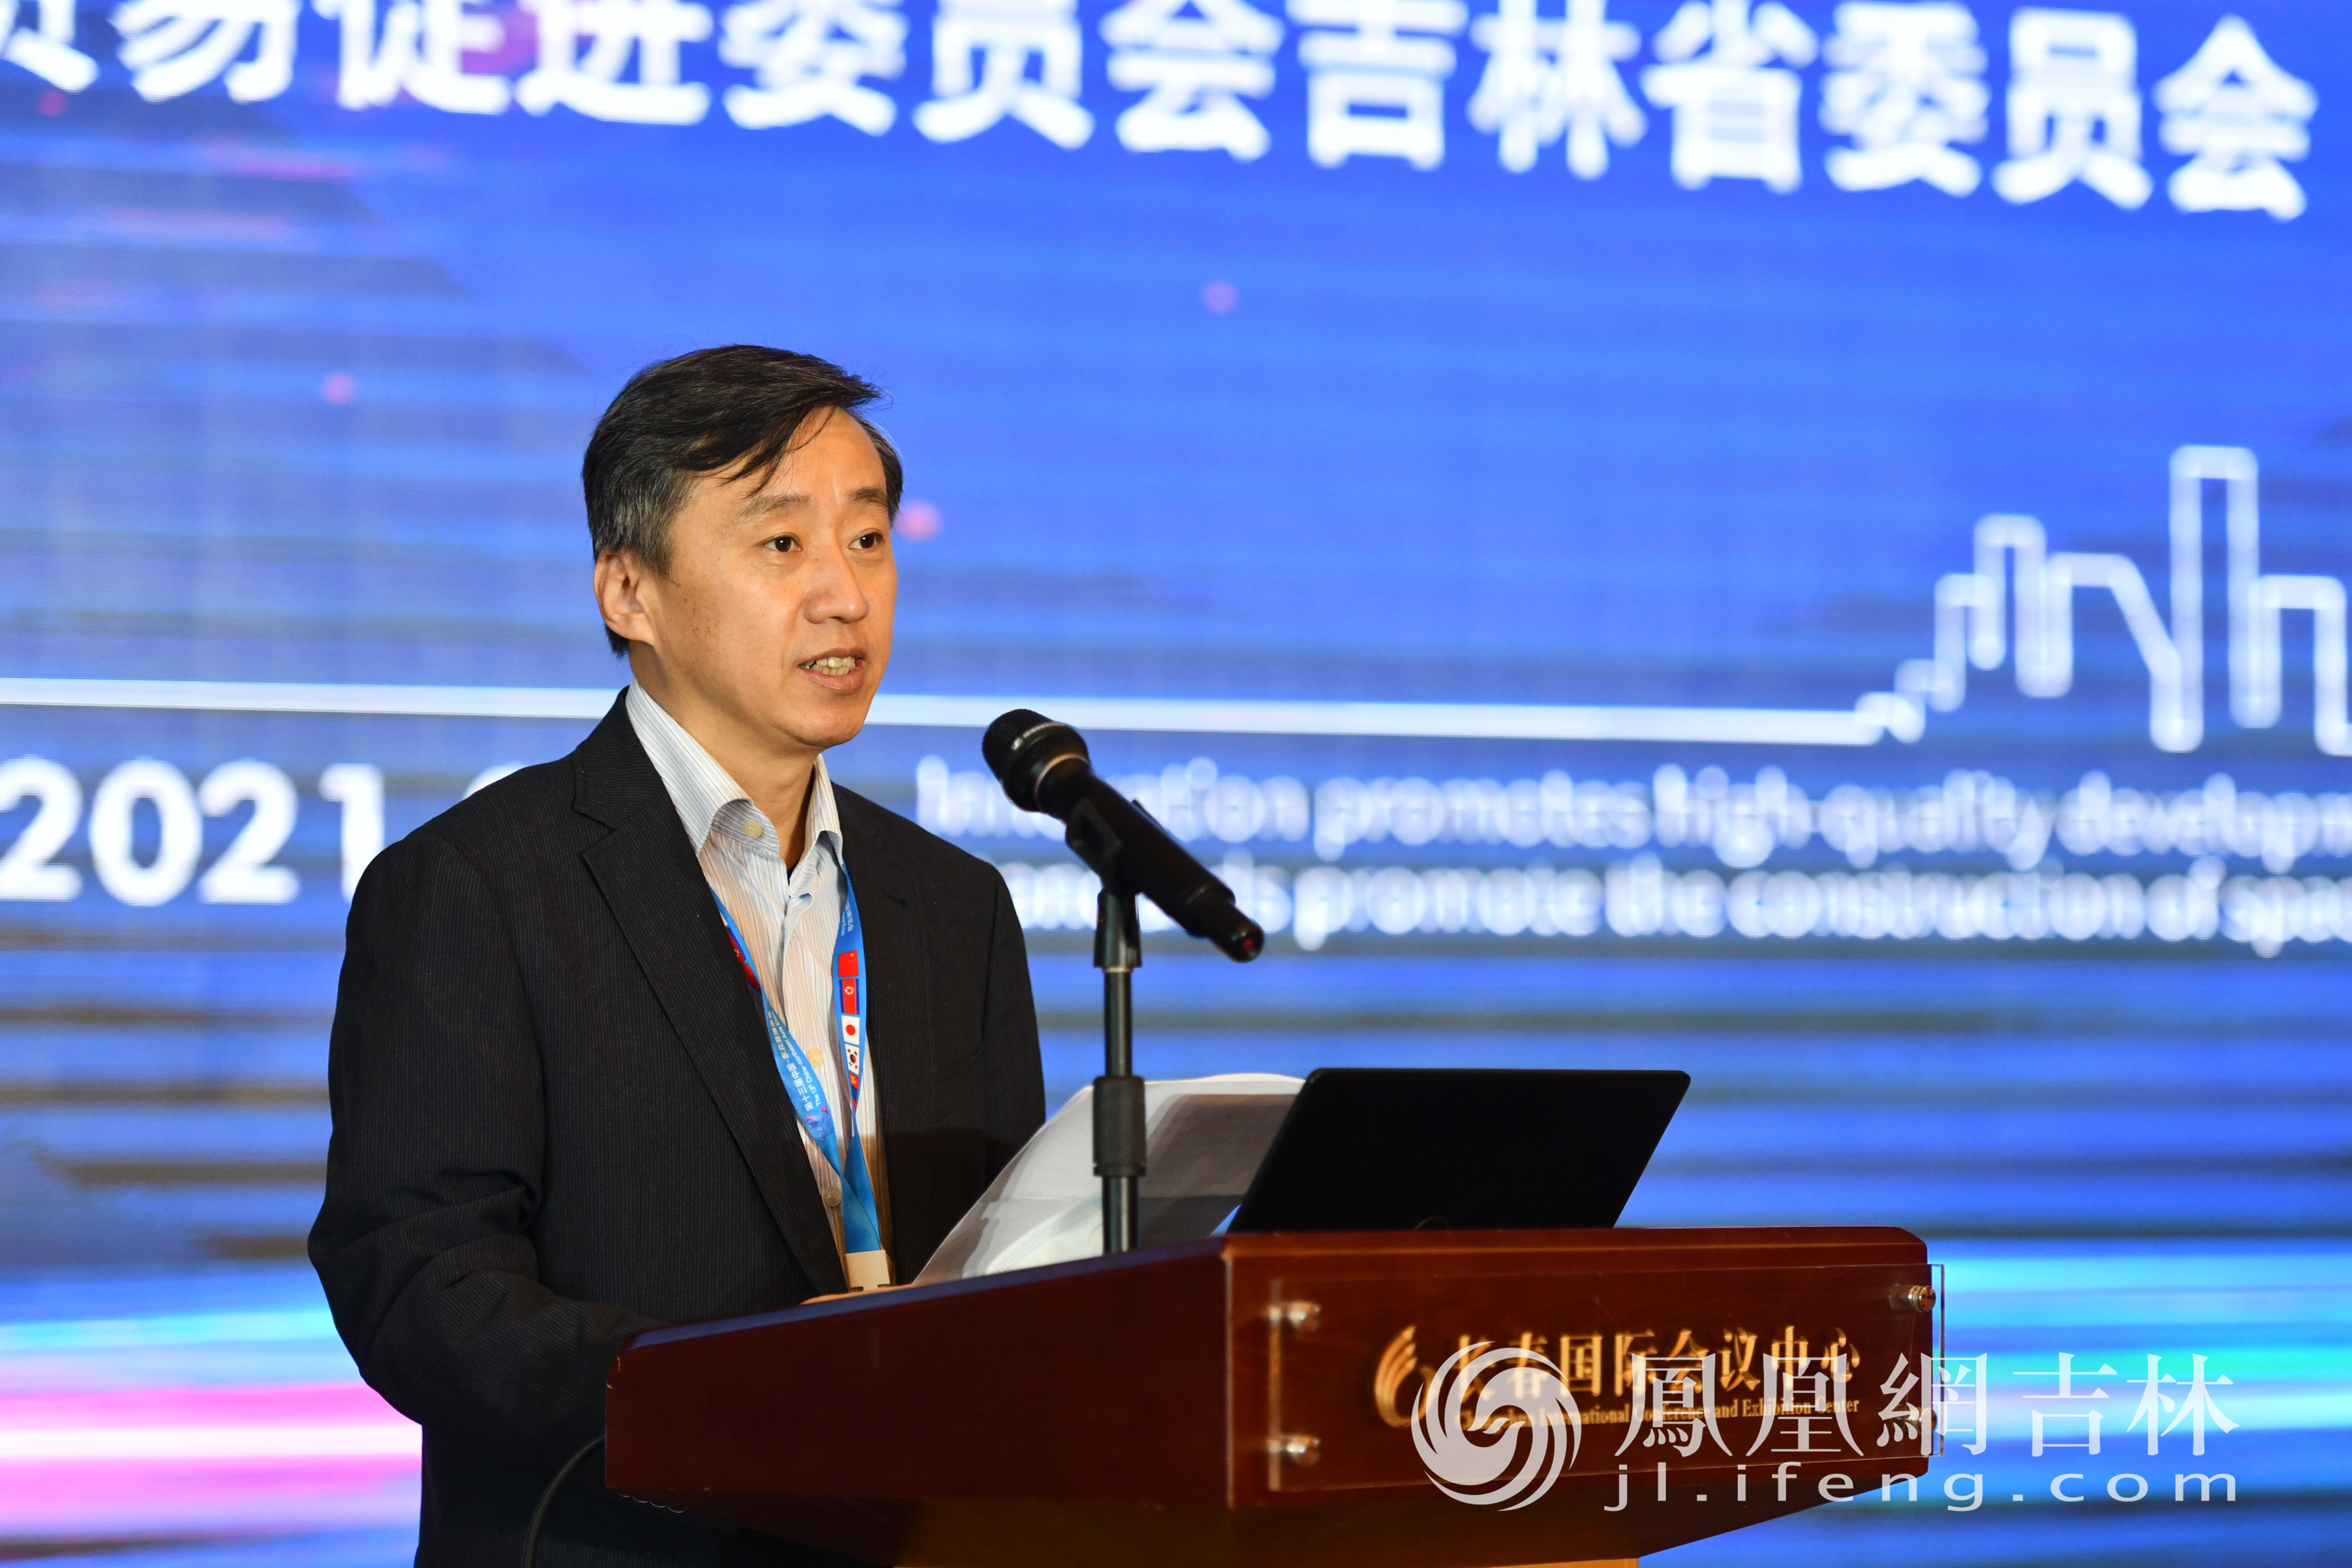 中国国际贸易促进委员会吉林省委员会副会长李建华在会上致辞。梁琪佳摄